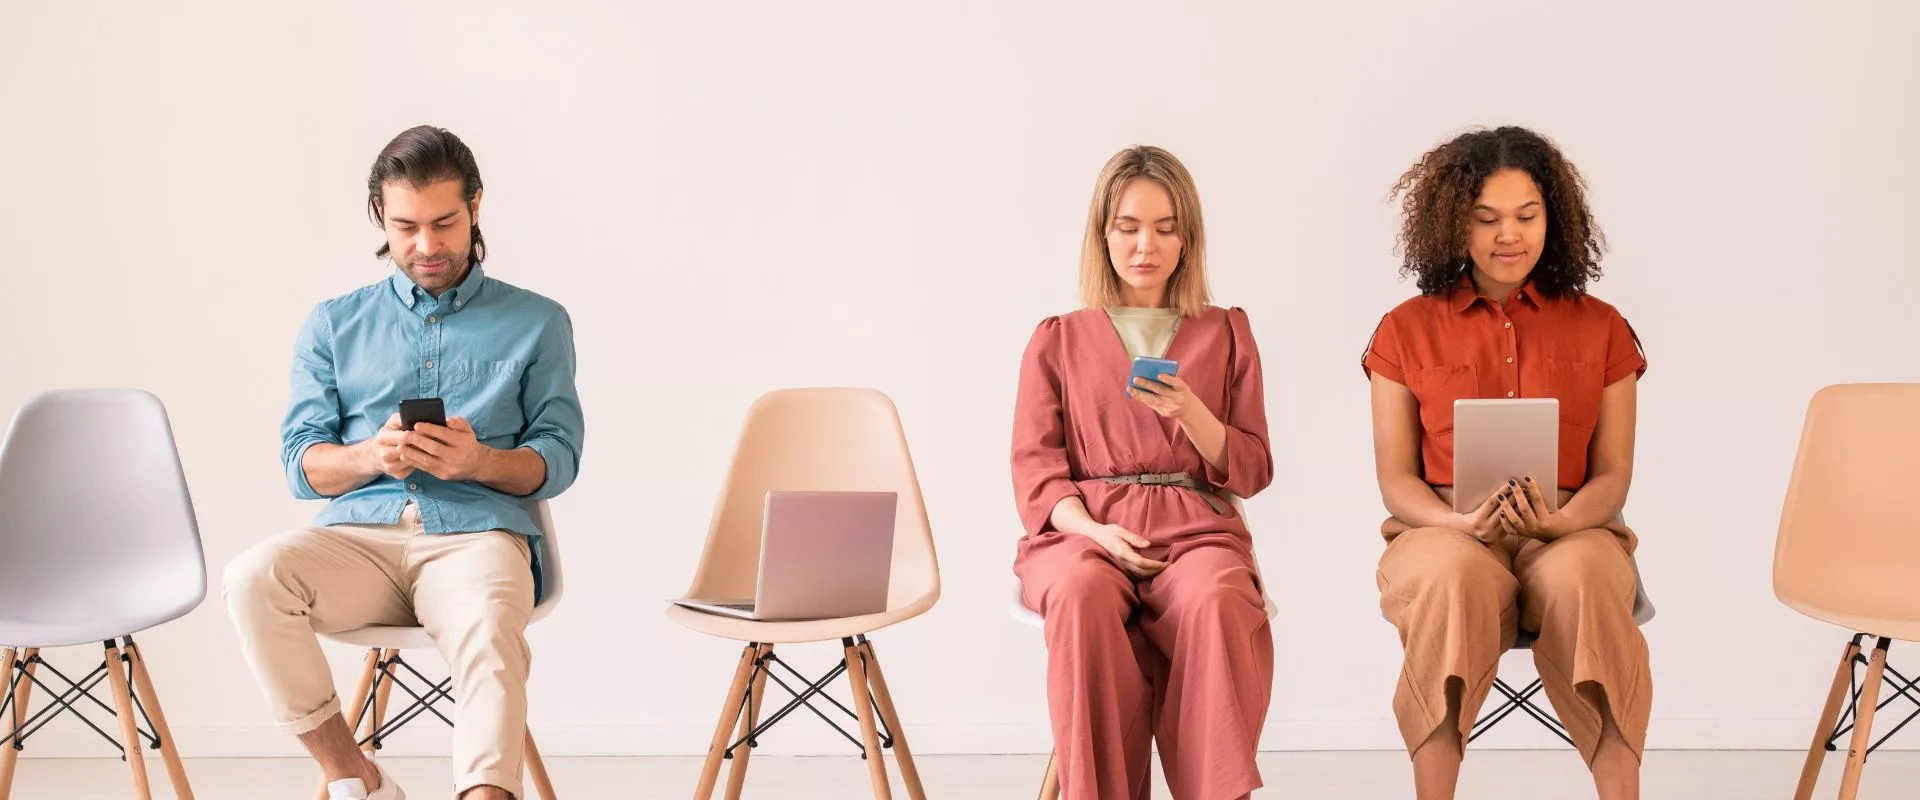 Eine Gruppe von Menschen, die auf Stühlen sitzen und mit ihren Telefonen auf Instagram surfen und gesponserte Werbung ansehen.